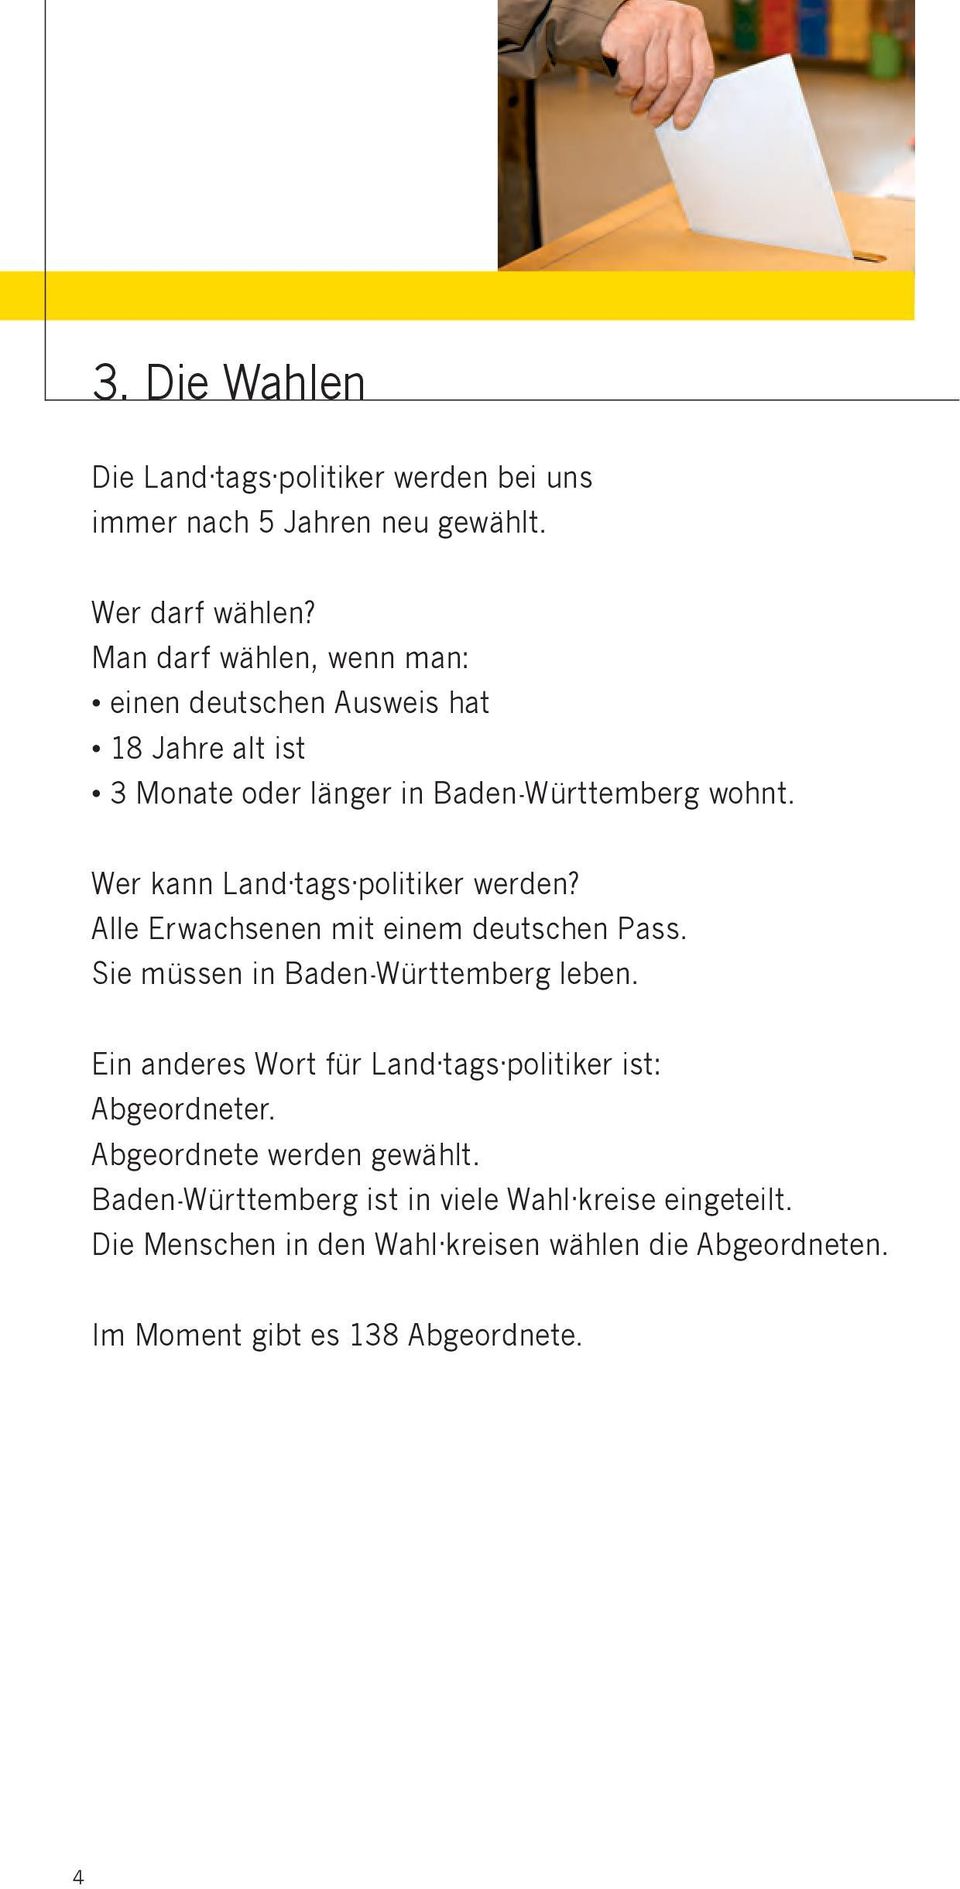 Wer kann Land tags politiker werden? Alle Erwachsenen mit einem deutschen Pass. Sie müssen in Baden-Württemberg leben.